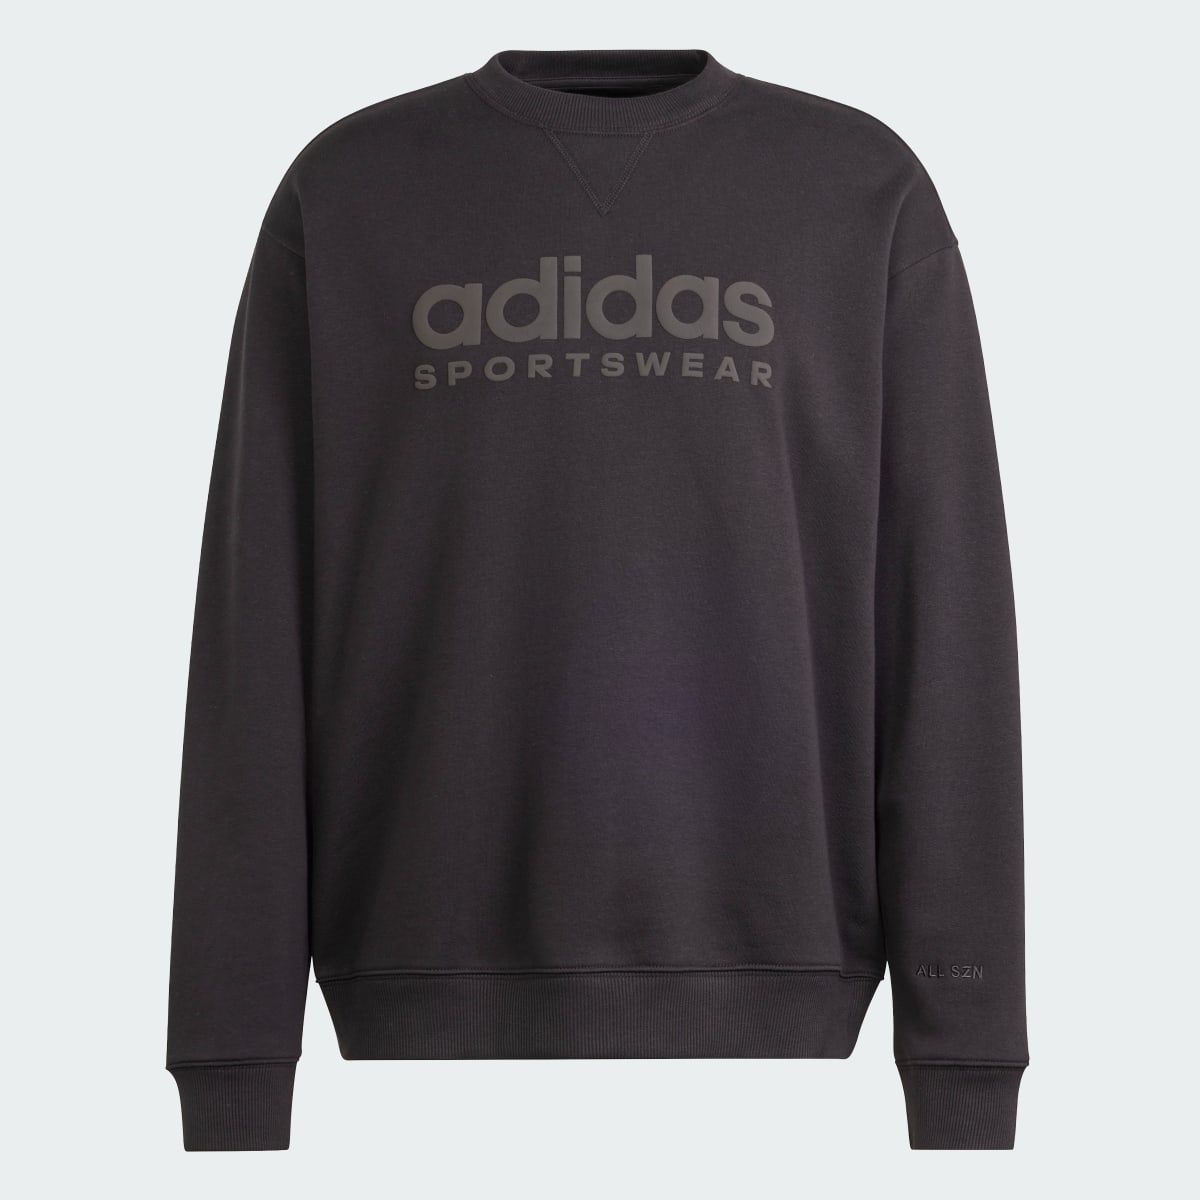 Adidas ALL SZN Fleece Graphic Sweatshirt. 5